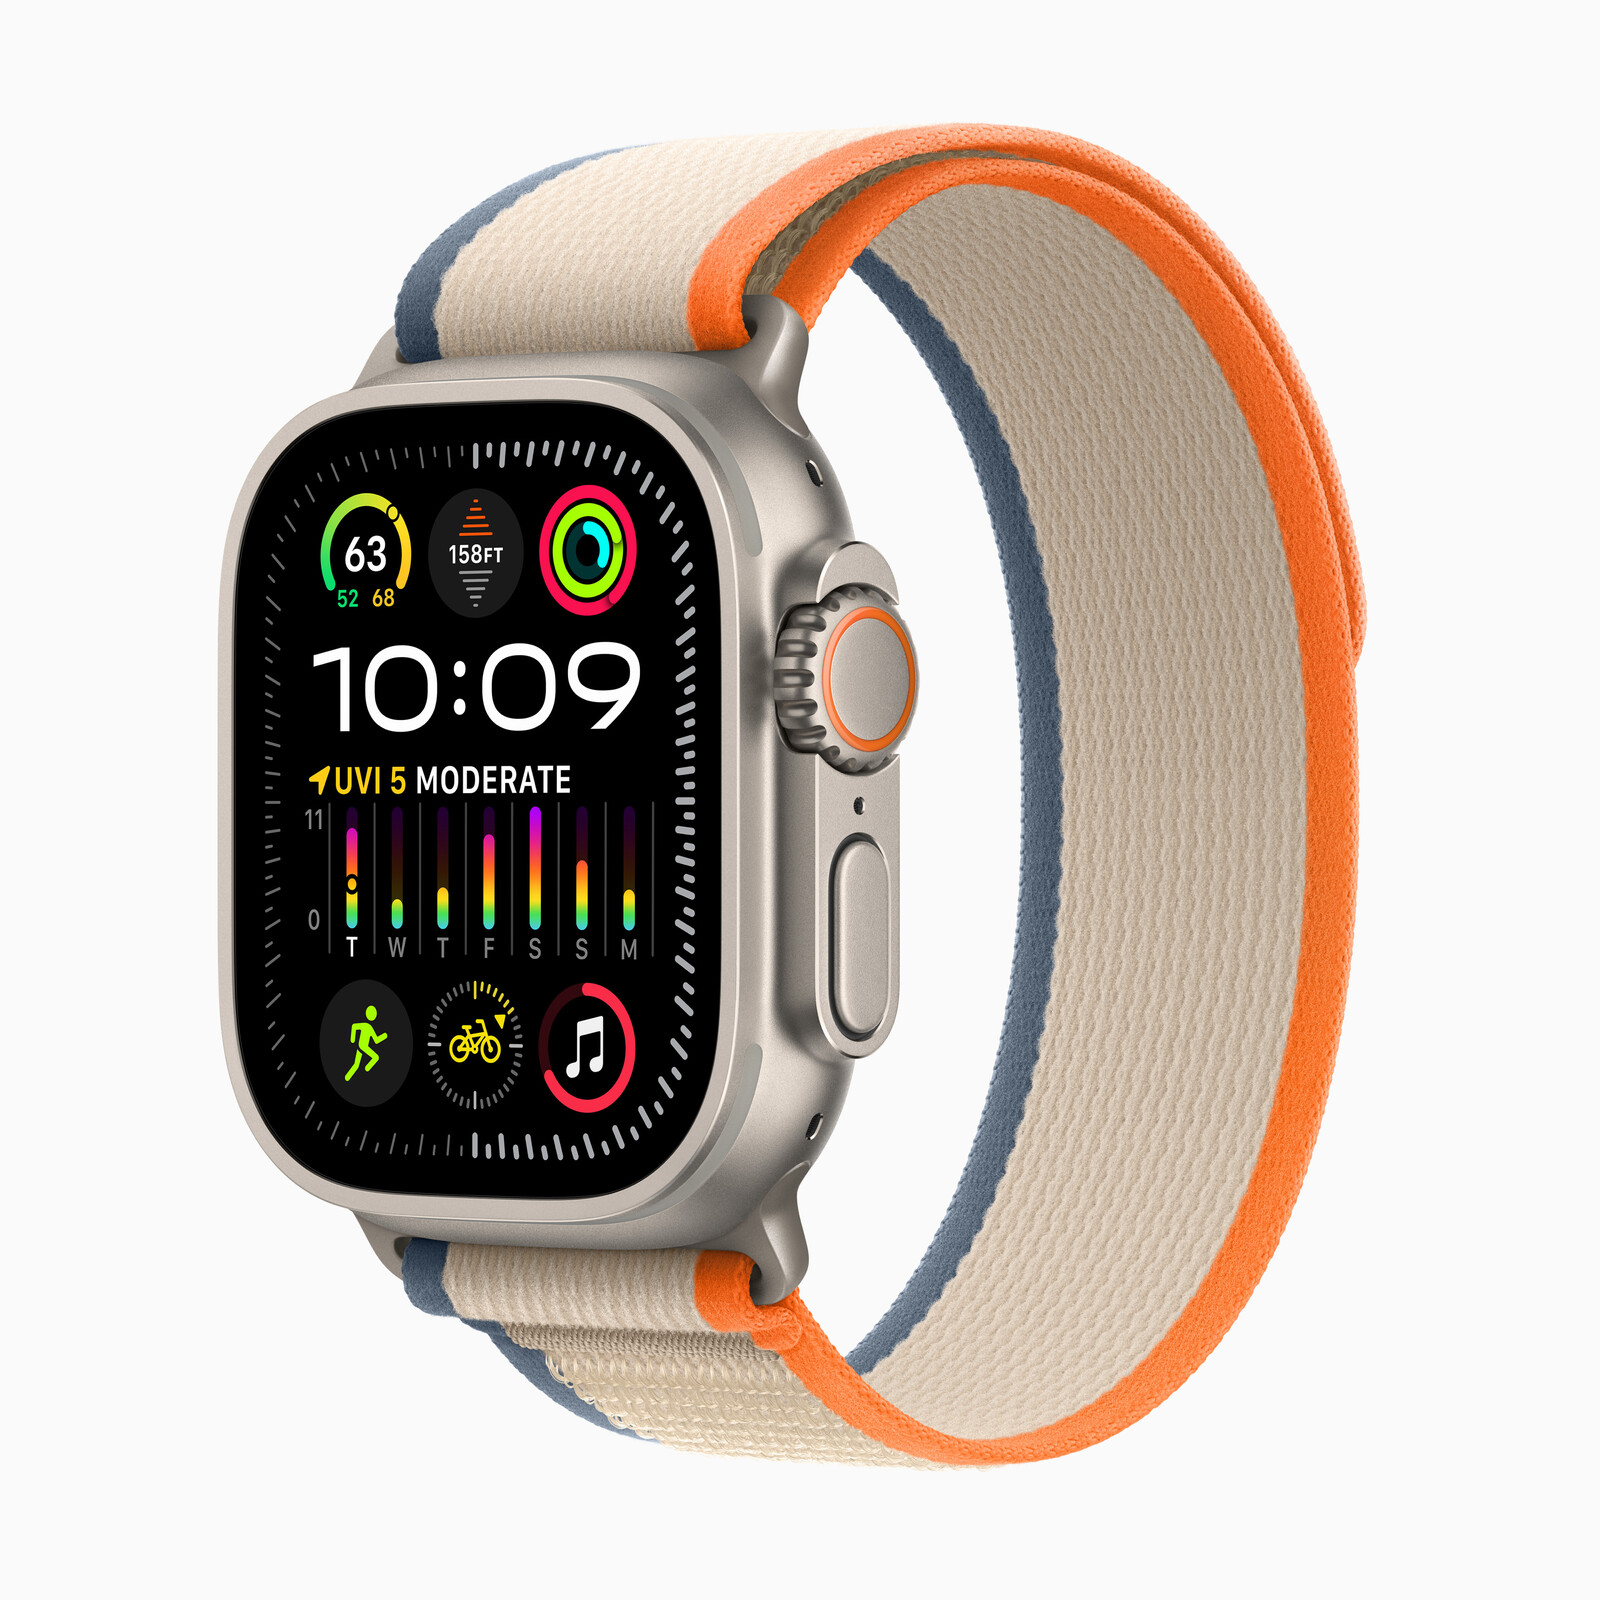 Apple Watch série 9 avec écran oled - stores sm